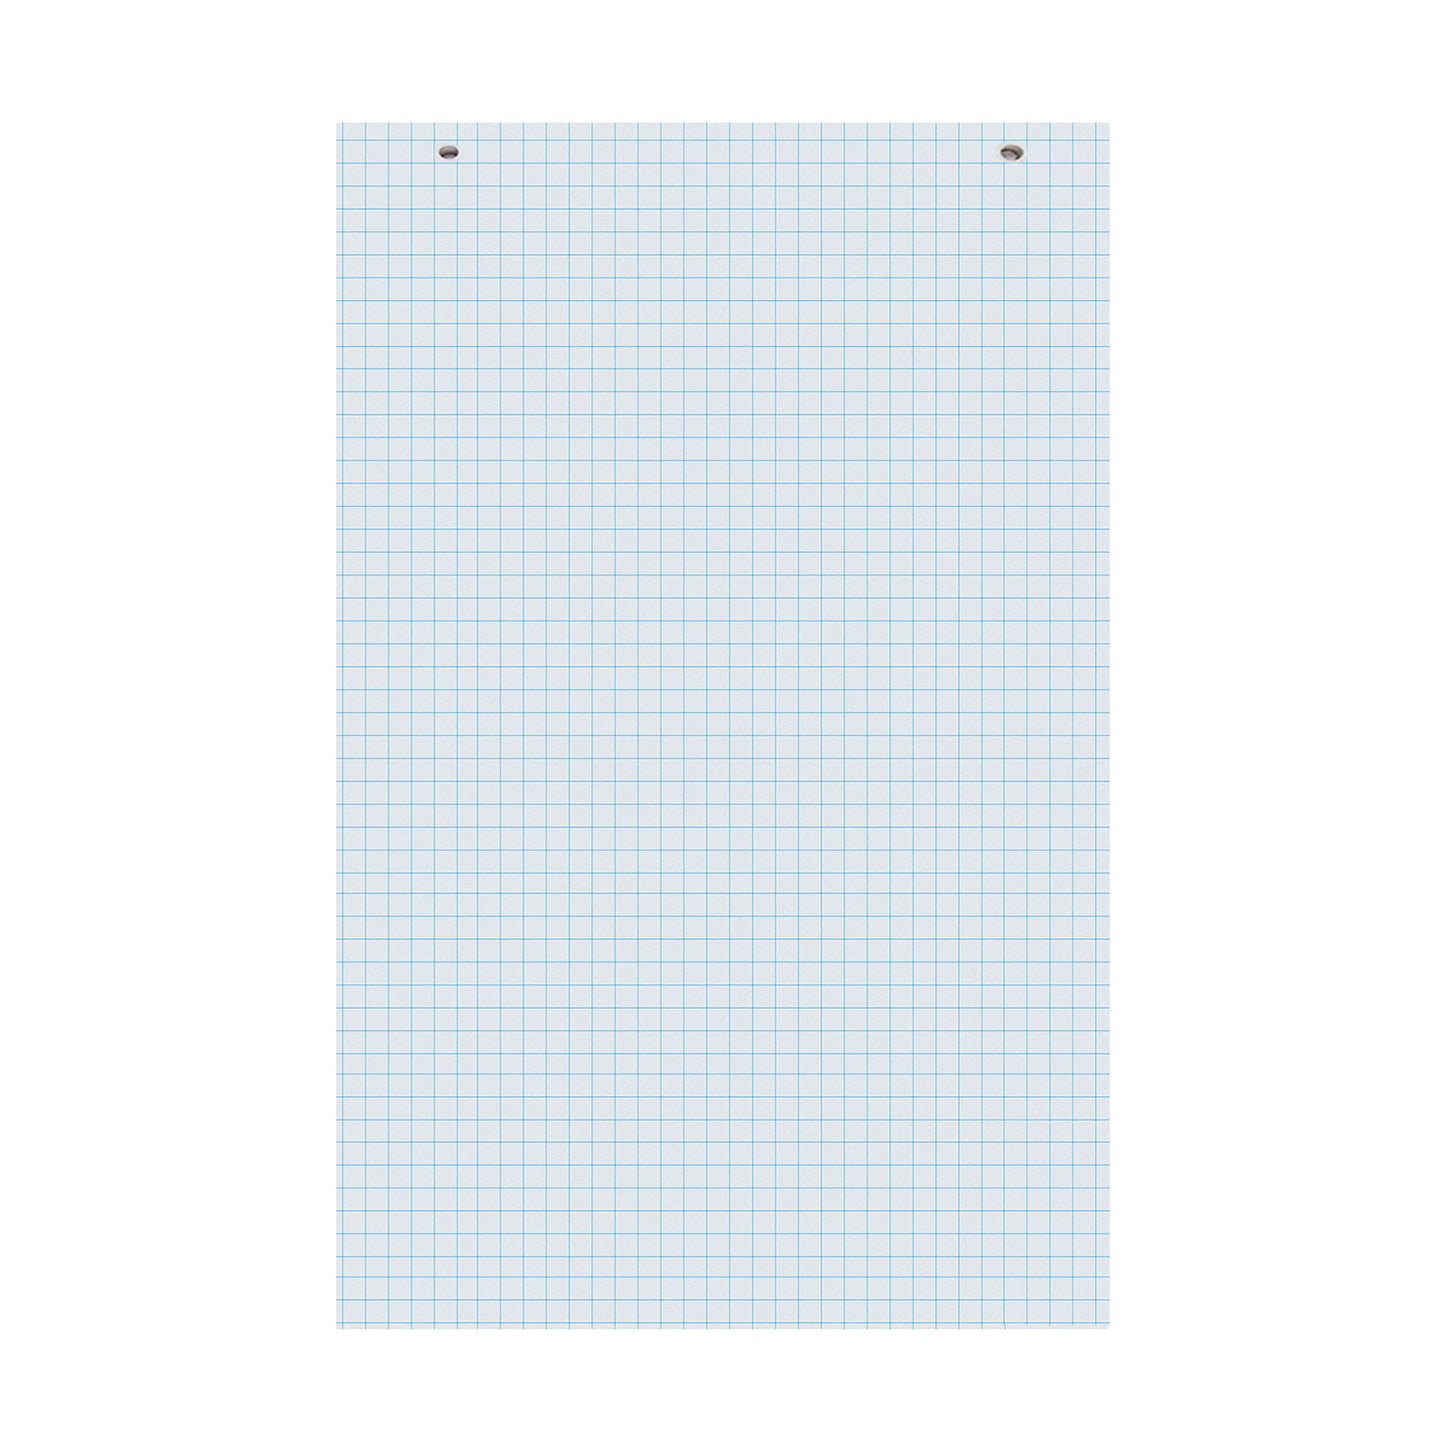 22" x 34" Flip Chart Paper Pads, Quad(Grid) Ruled - 100 Sheets